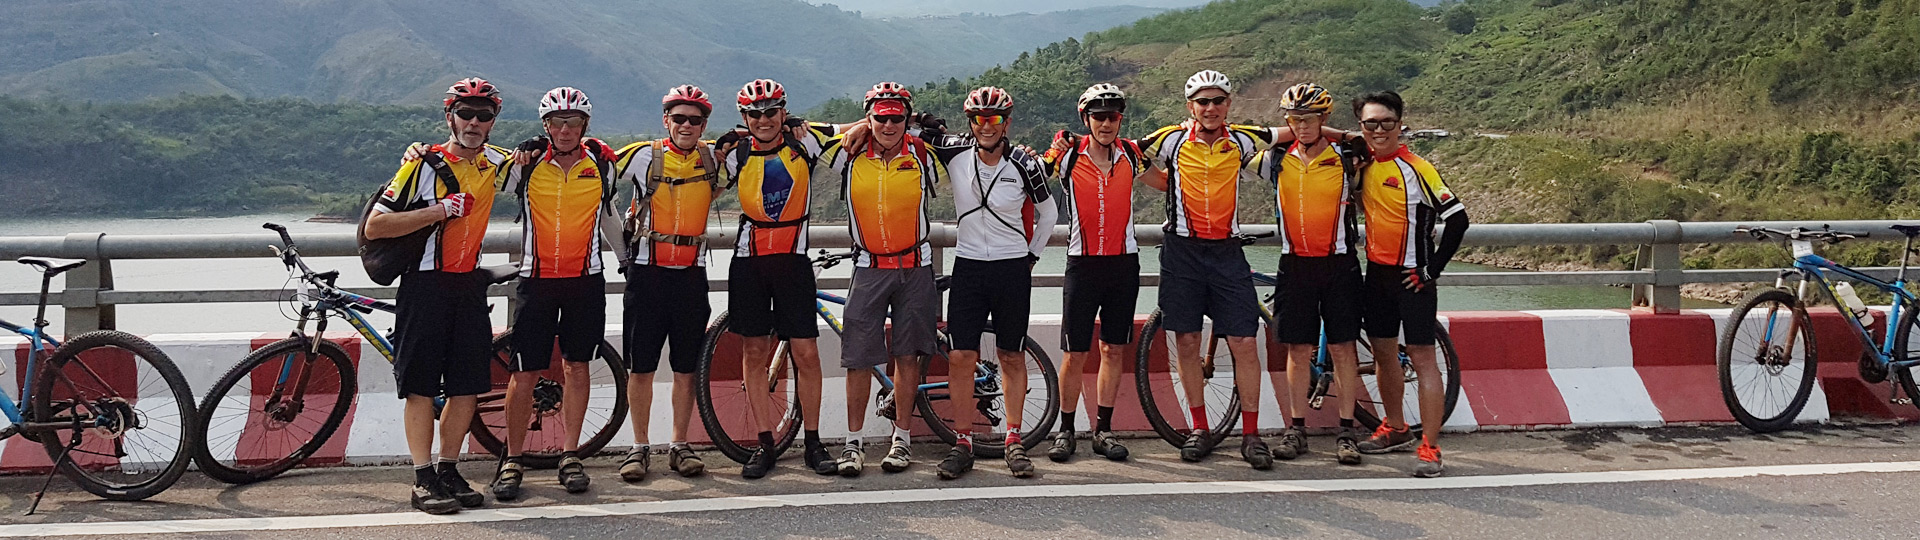 Luang Prabang Free And Easy Biking Tour – 6 Days